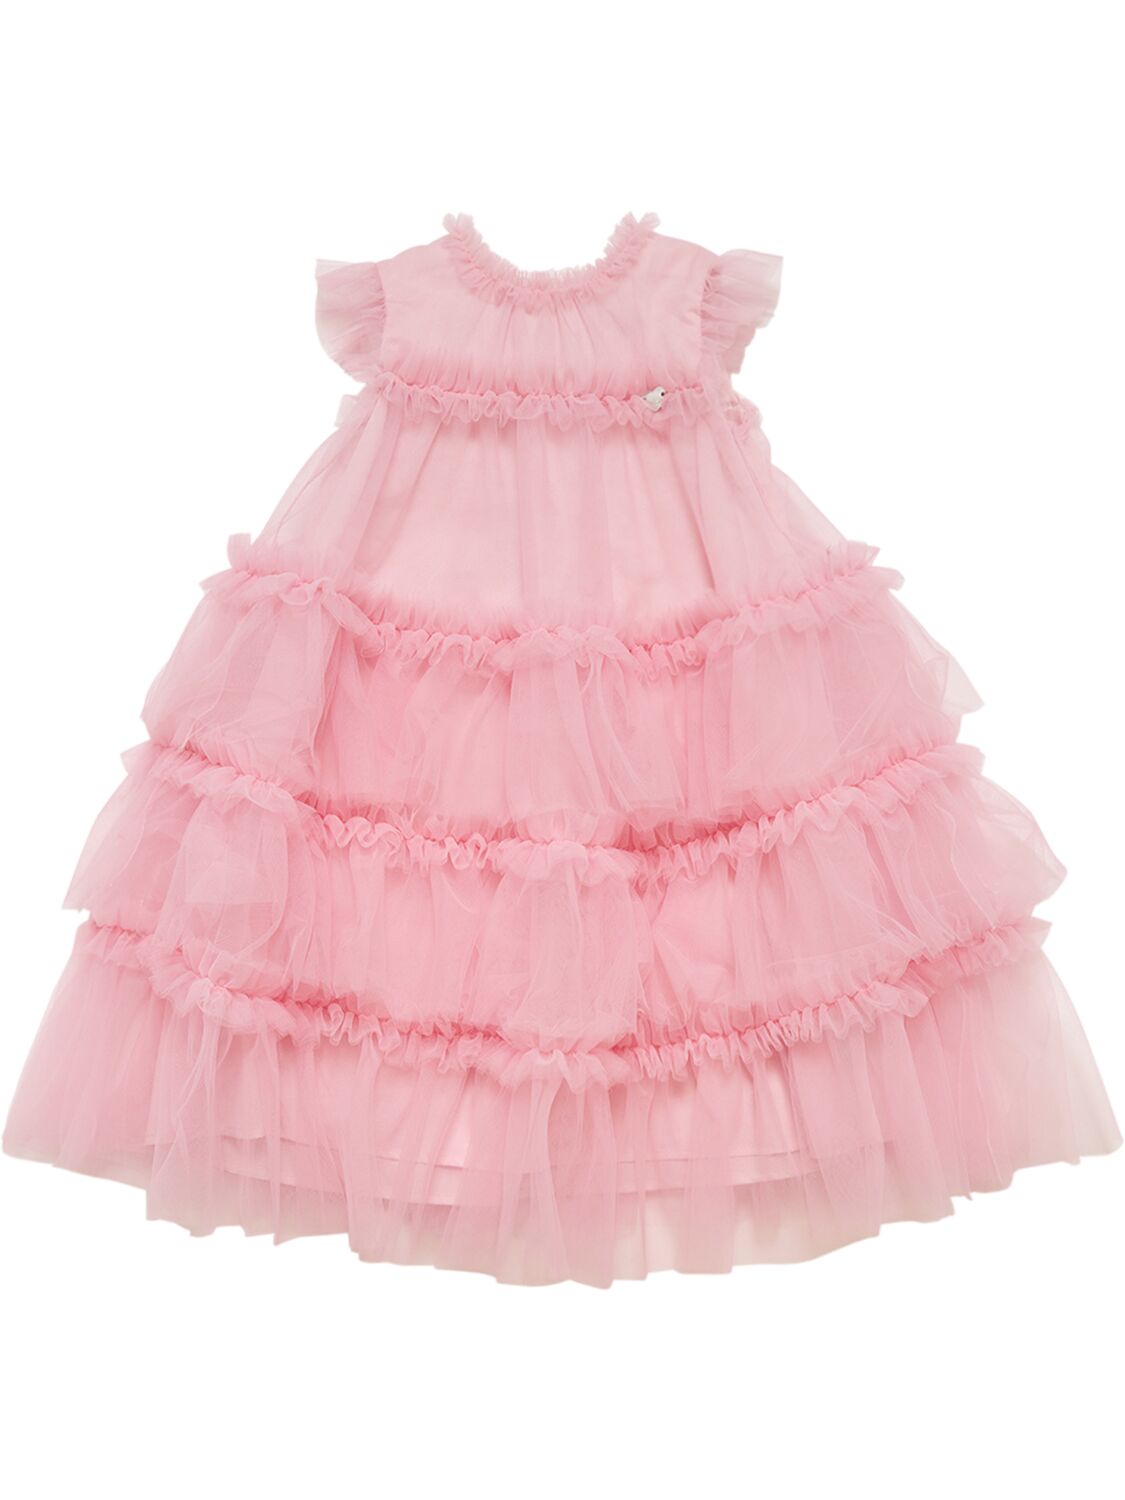 Monnalisa Kids' Tulle Dress W/ Ruffles In Pink